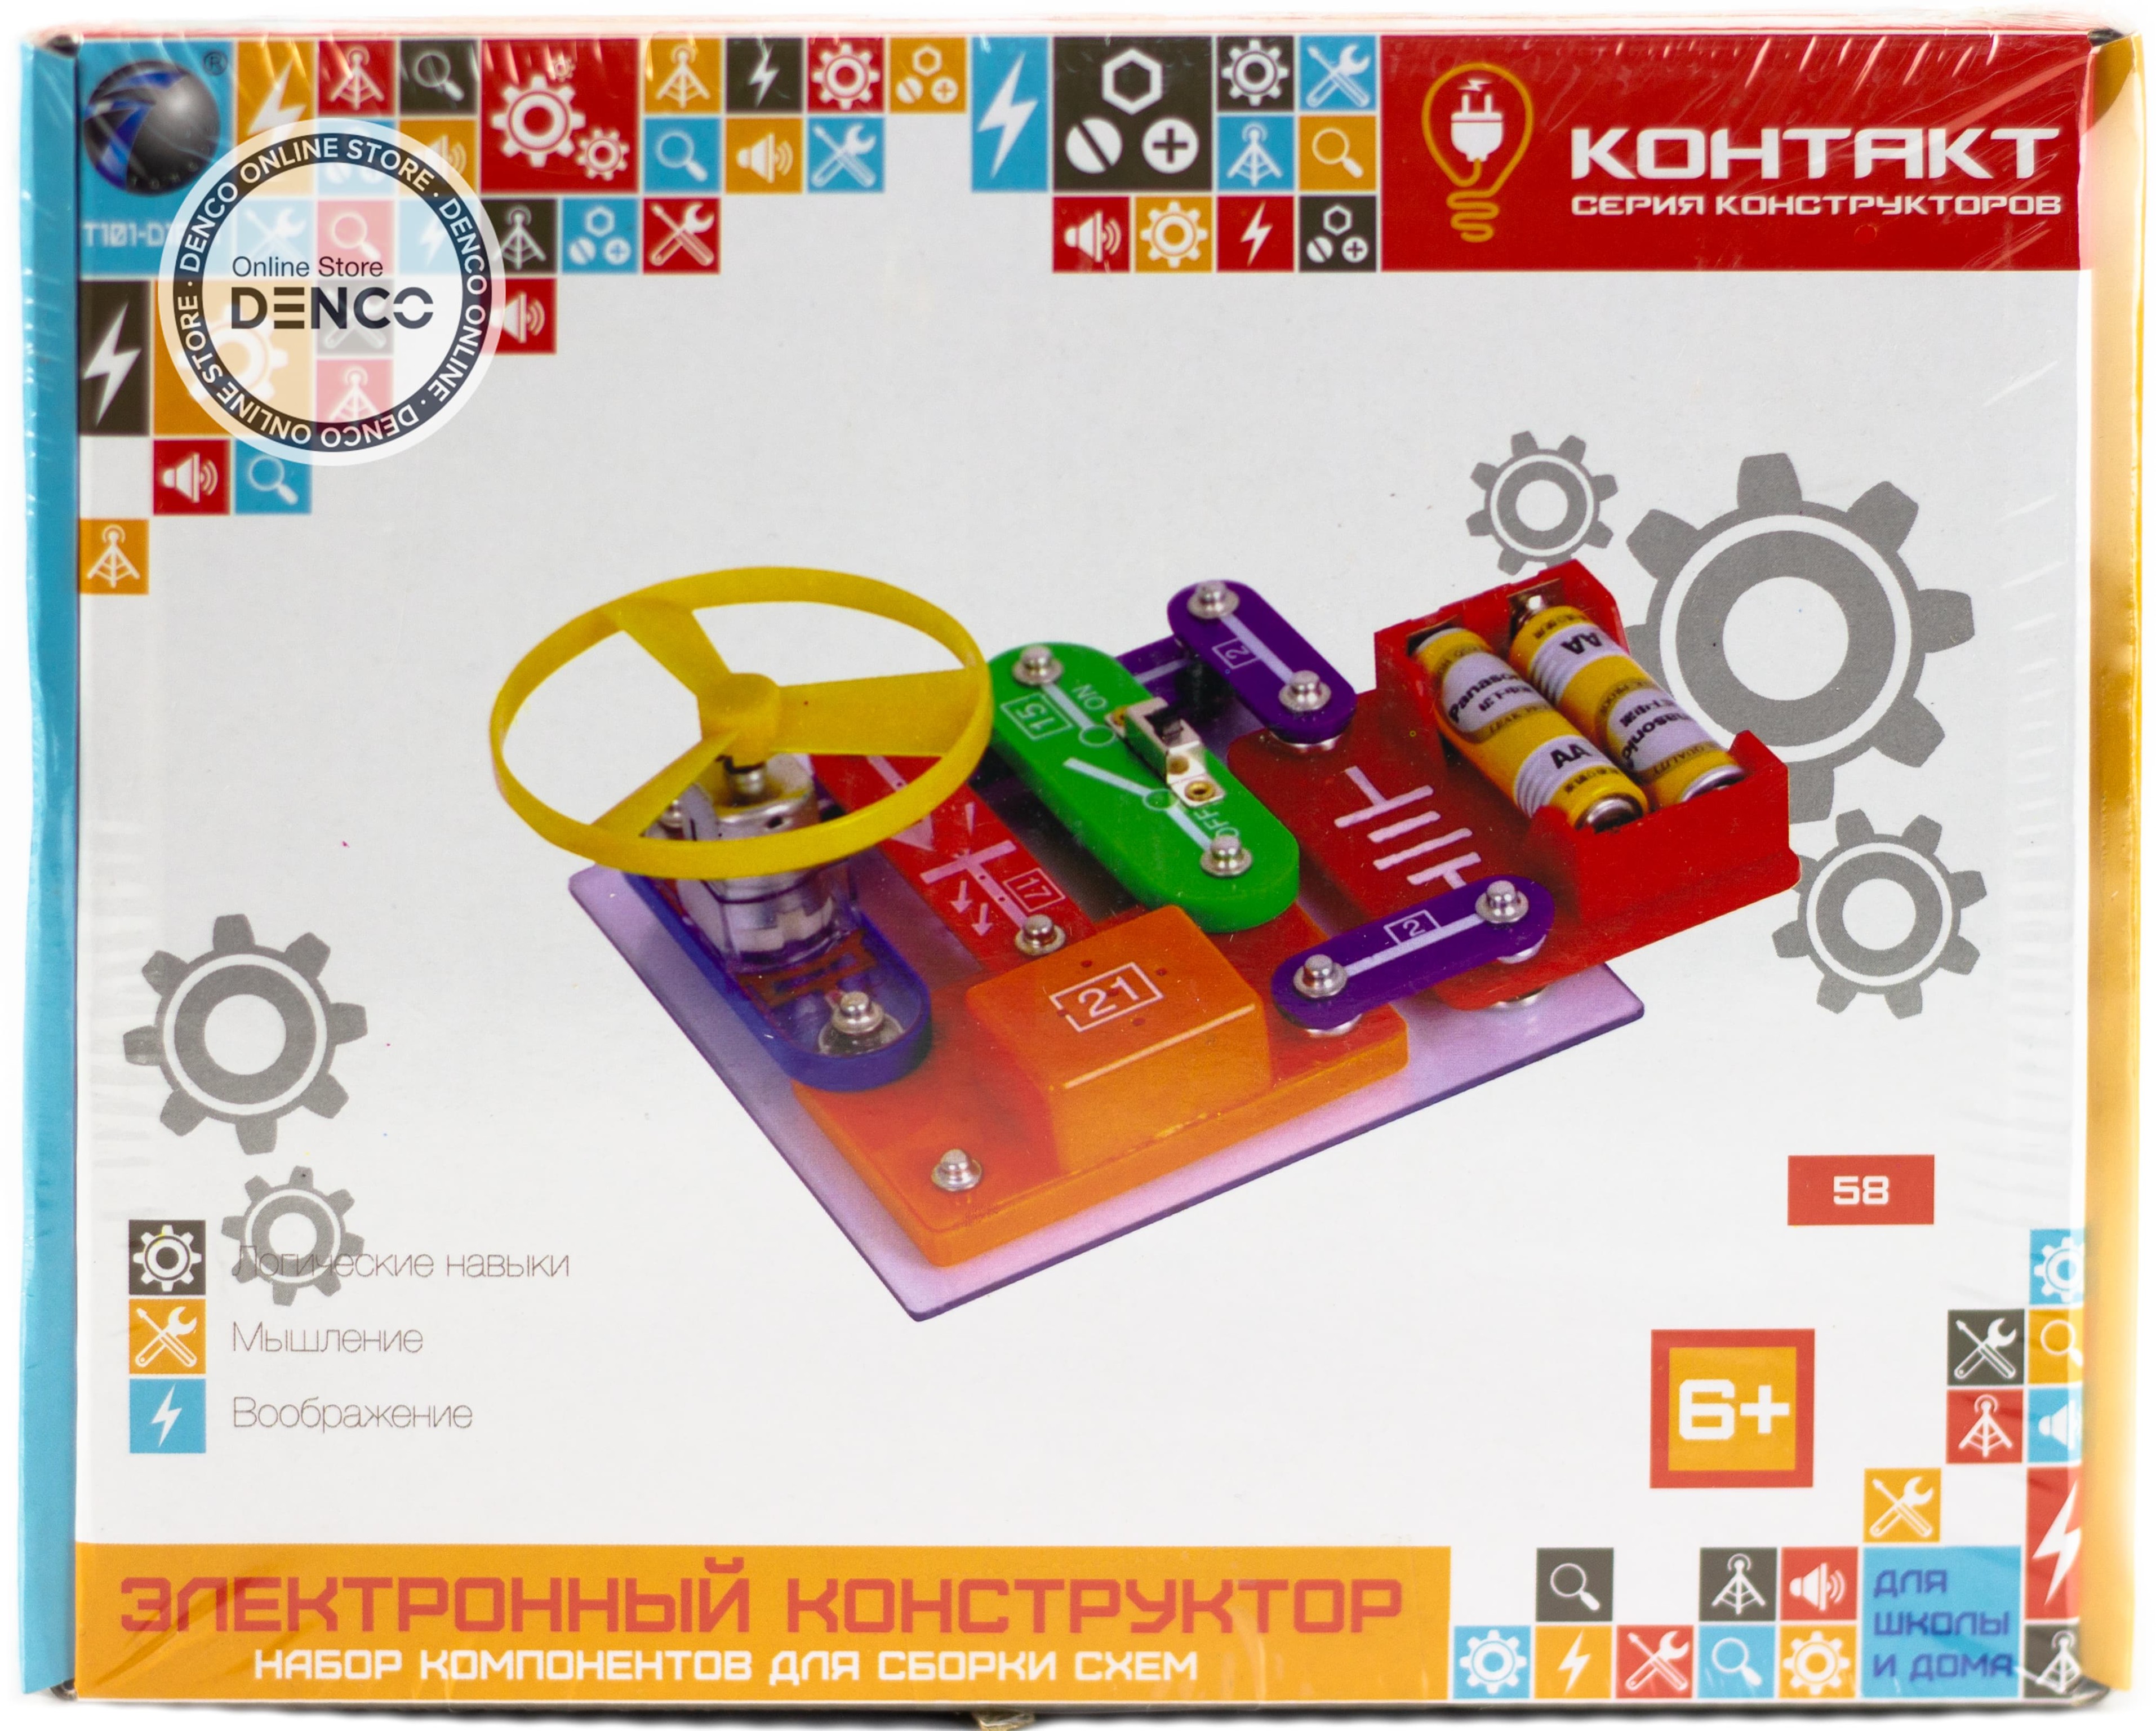 Детский электронный конструктор «Контакт» T101-D1891 / 58 схем